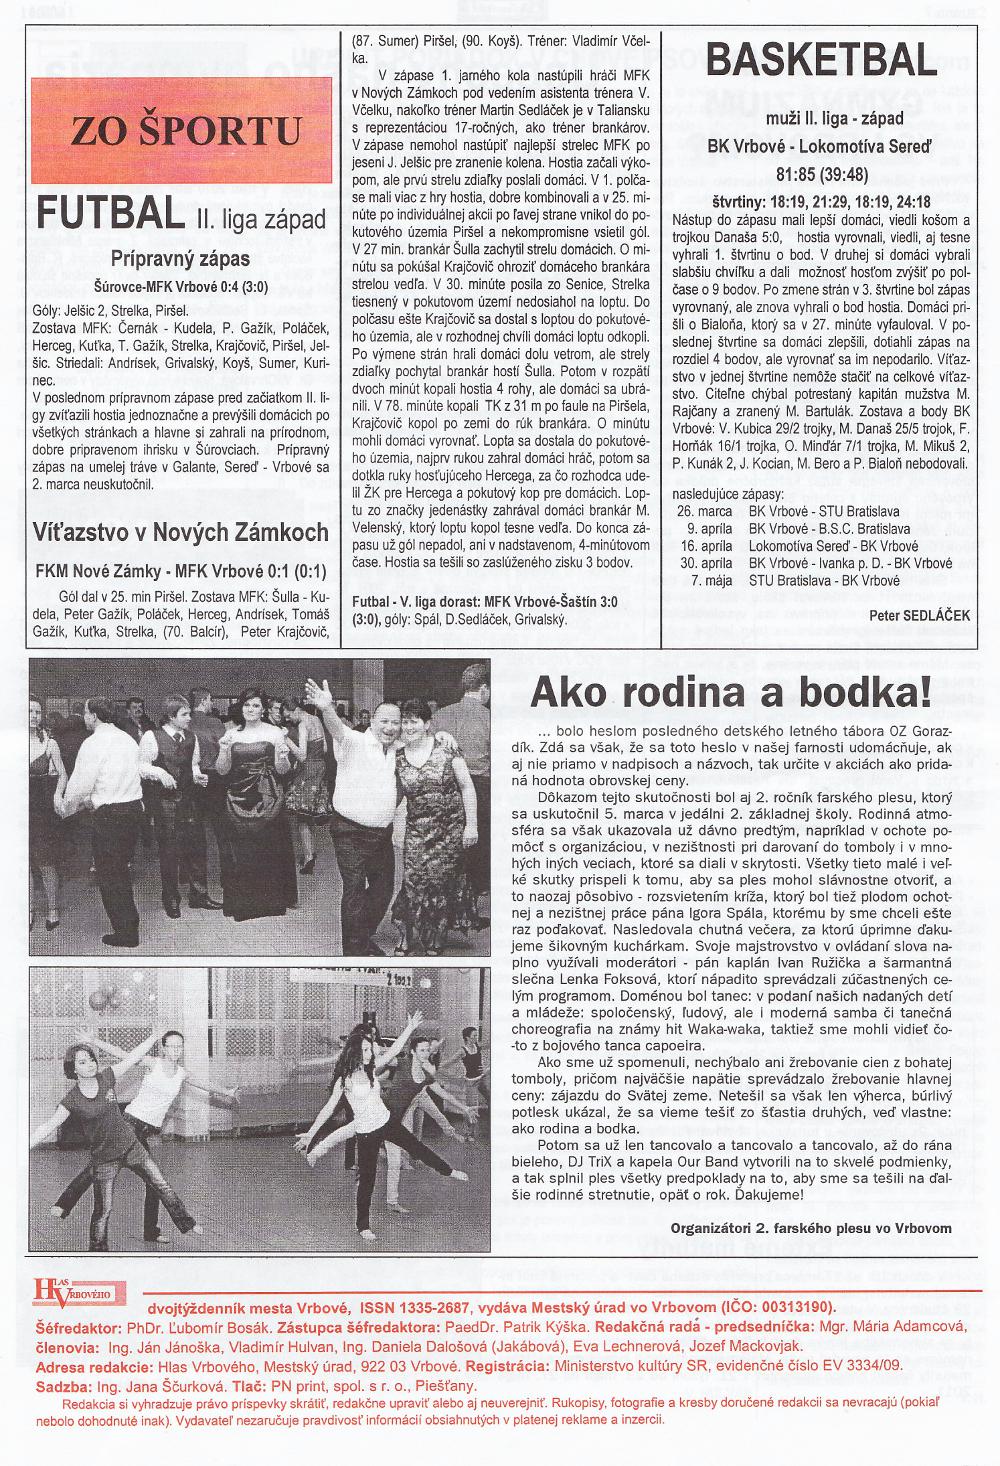 Hlas Vrbového 06/2011, strana 8